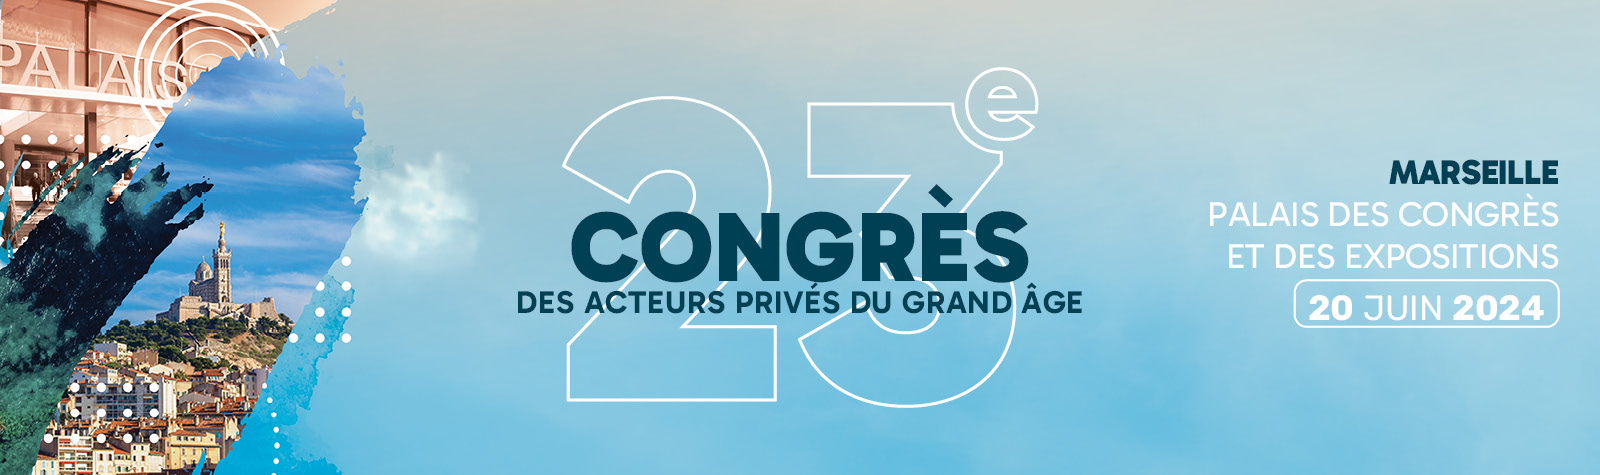 Un franc succès pour le 23e Congrès des acteurs privés du grand âge à Marseille